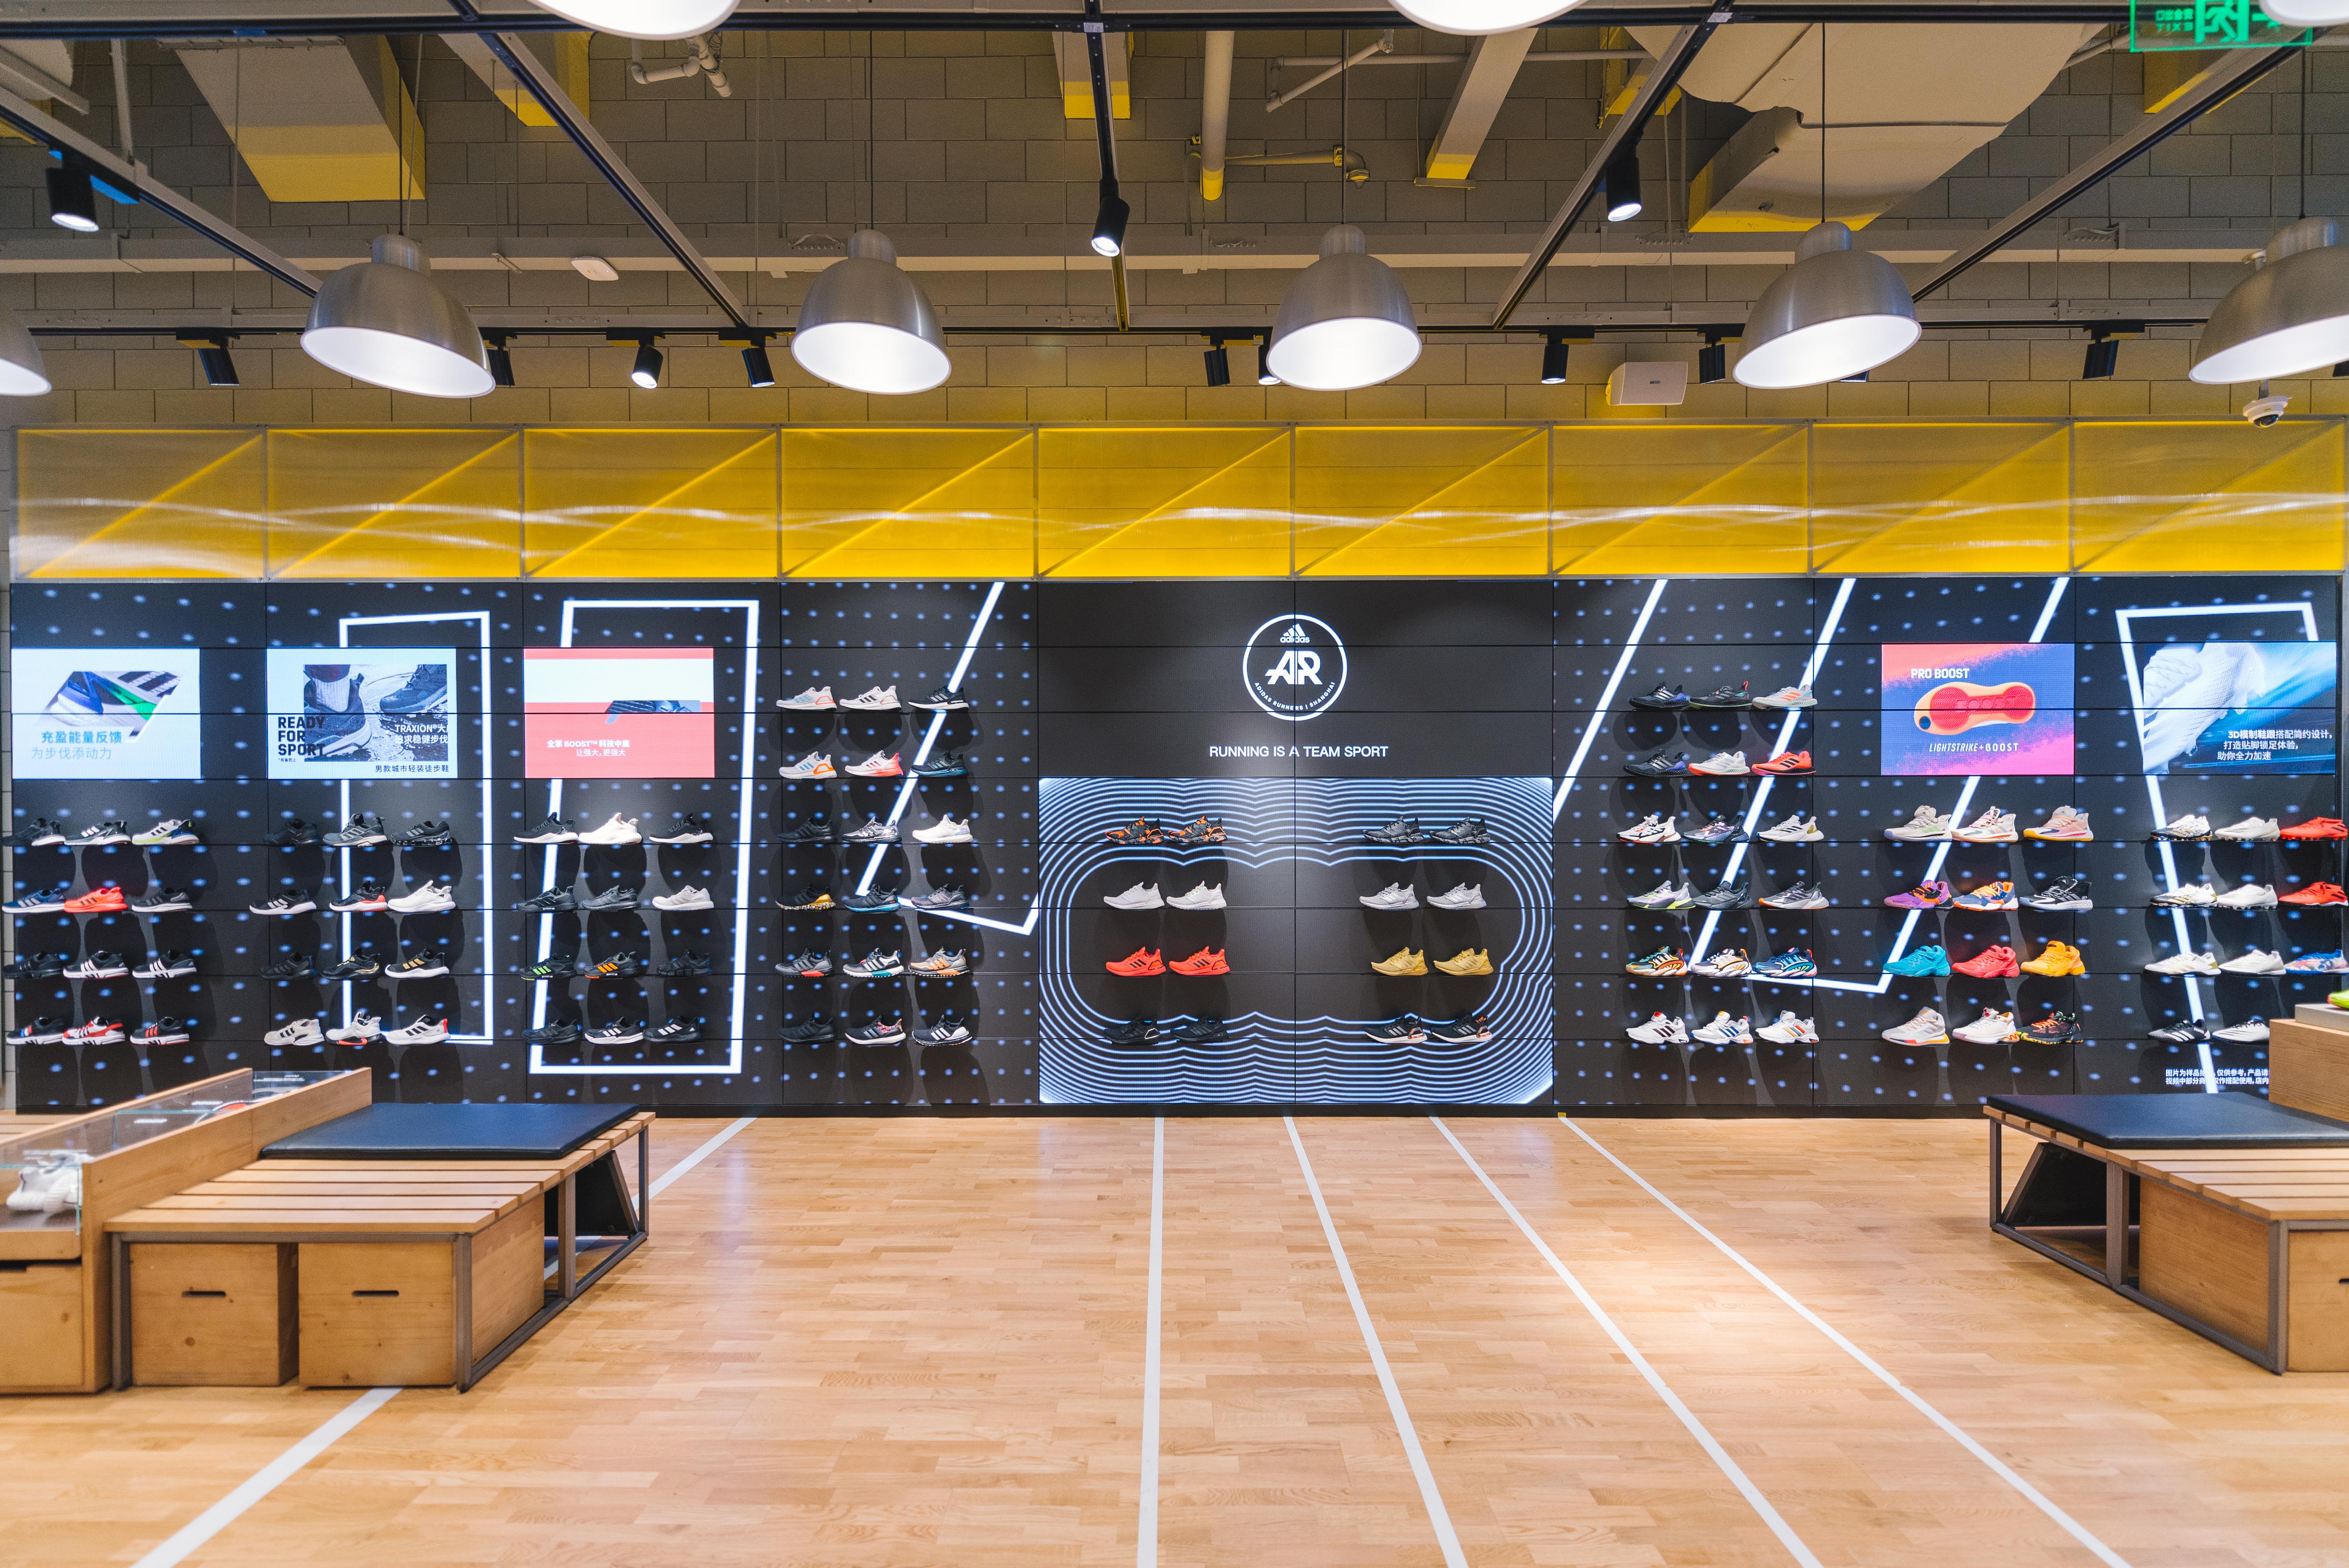 坐落于南京东路233号外滩 adidas 旗舰店,将上海元素和 adidas 的运动